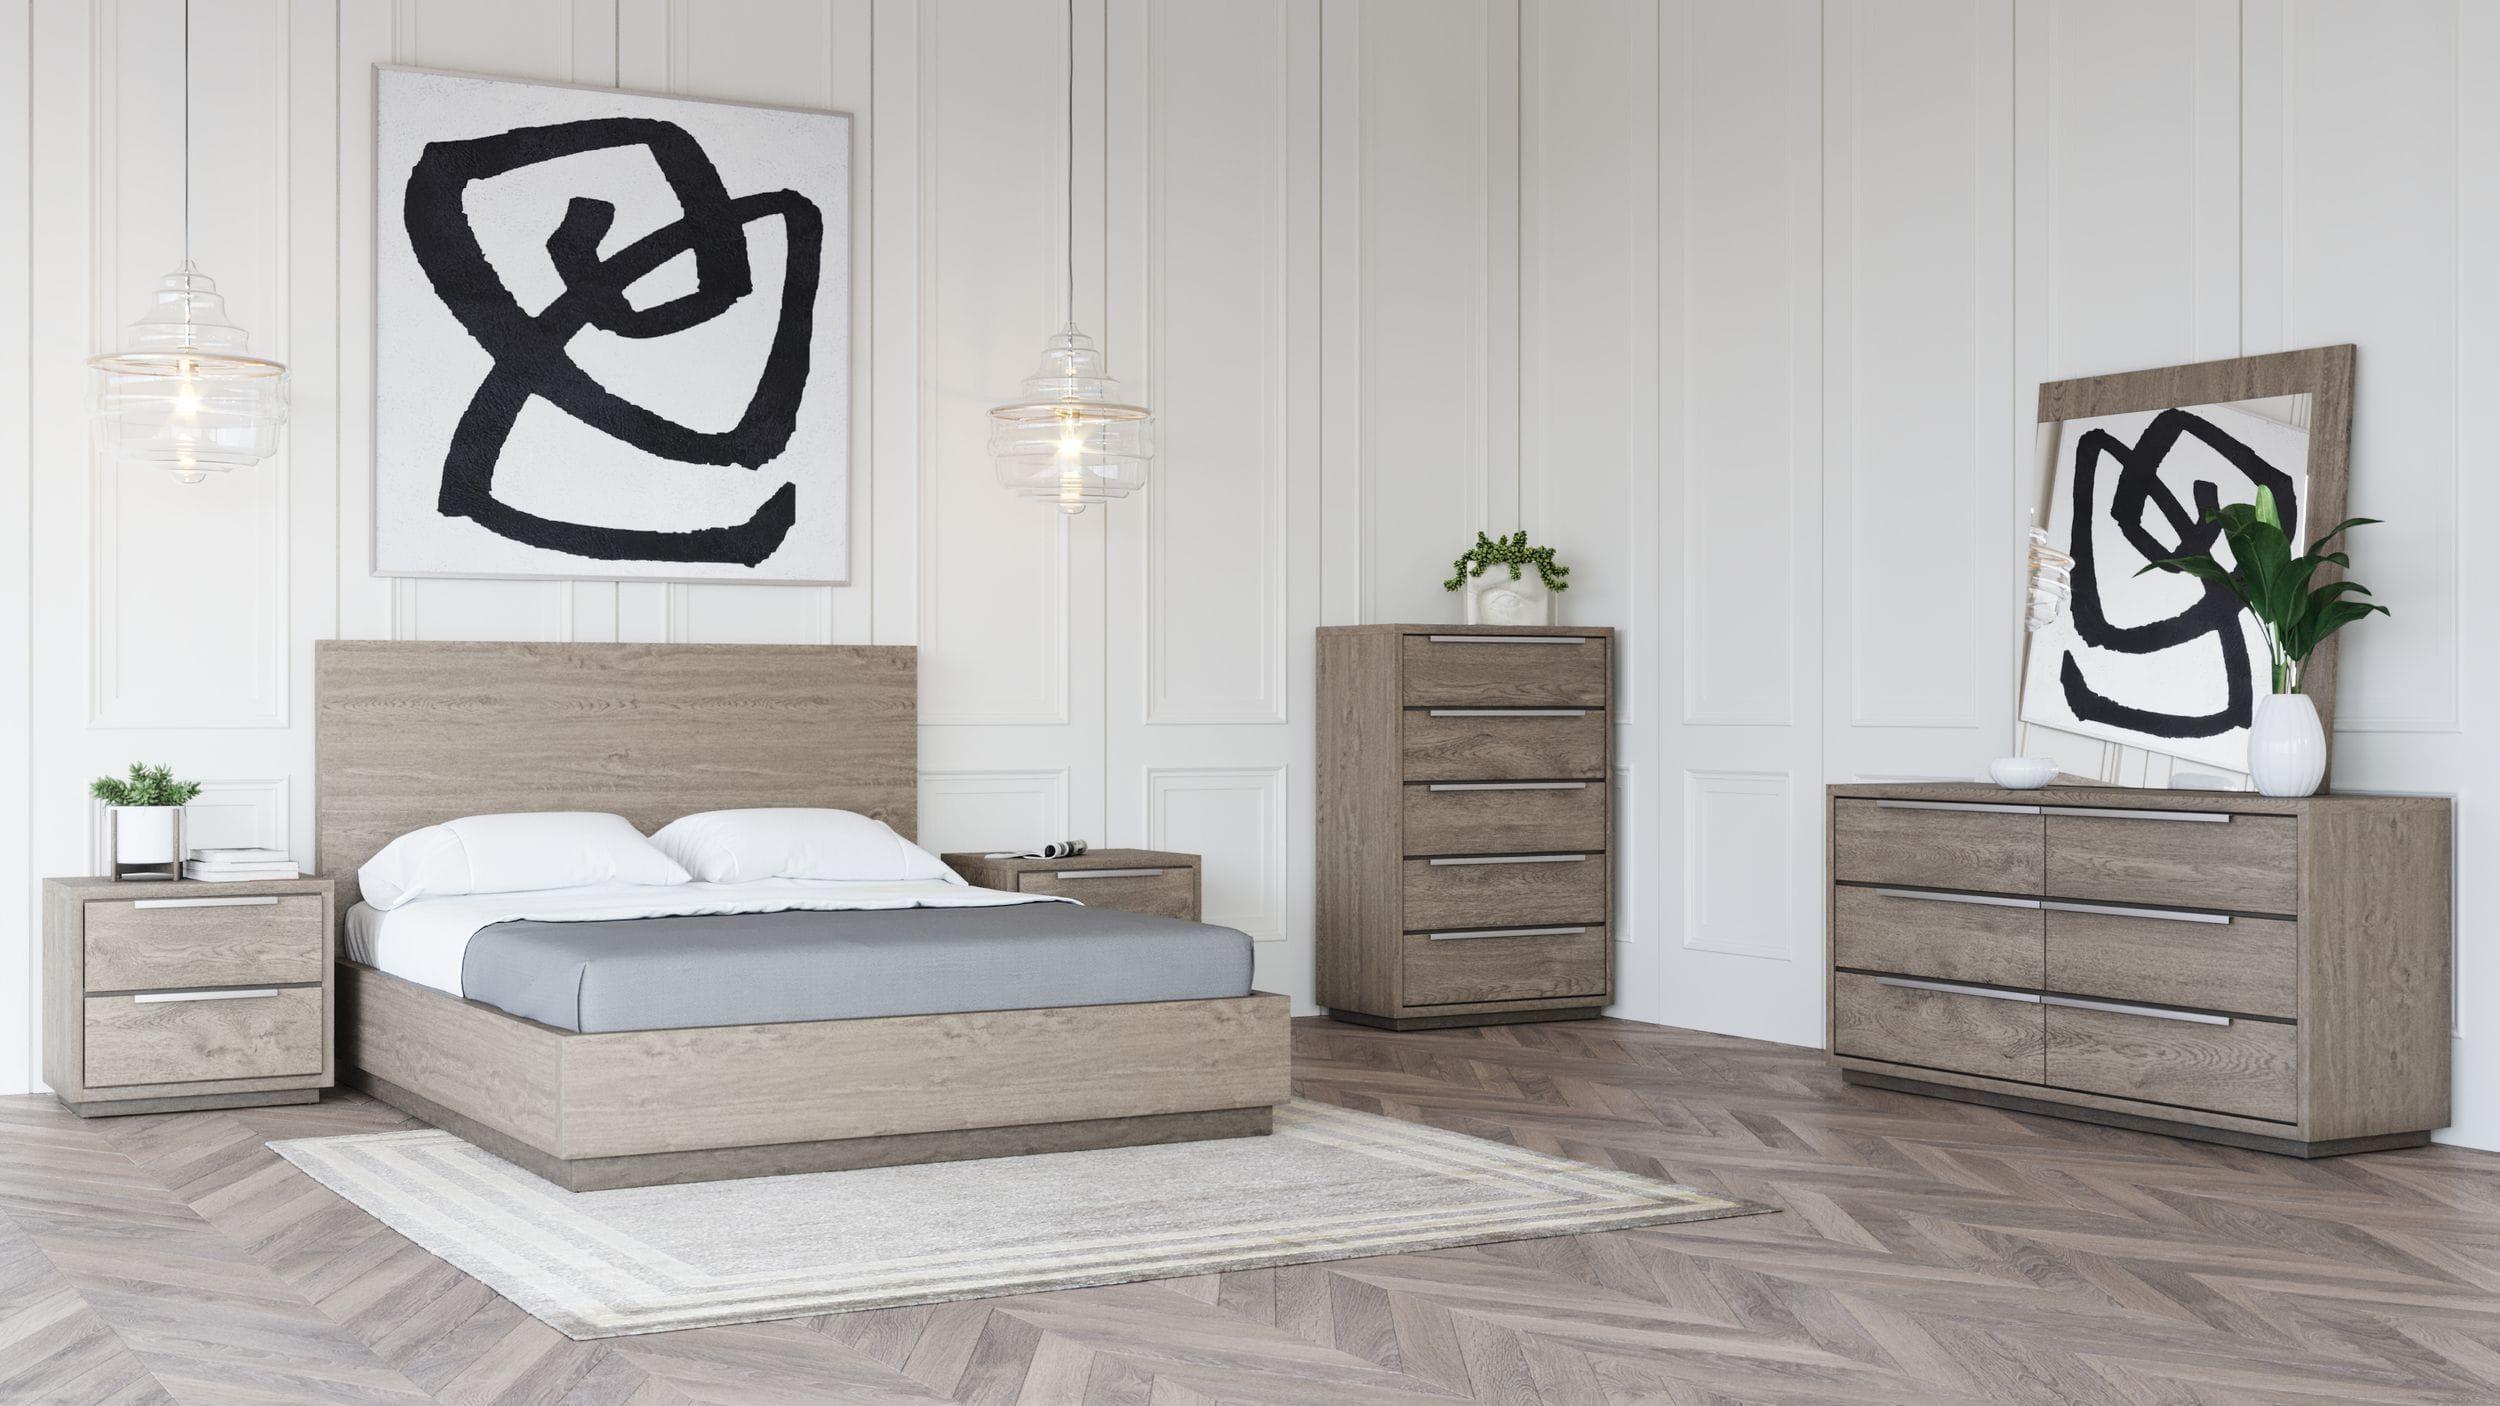 

    
Oak & Silver King Size Bedroom Set 6Pcs by VIG Modrest Samson
